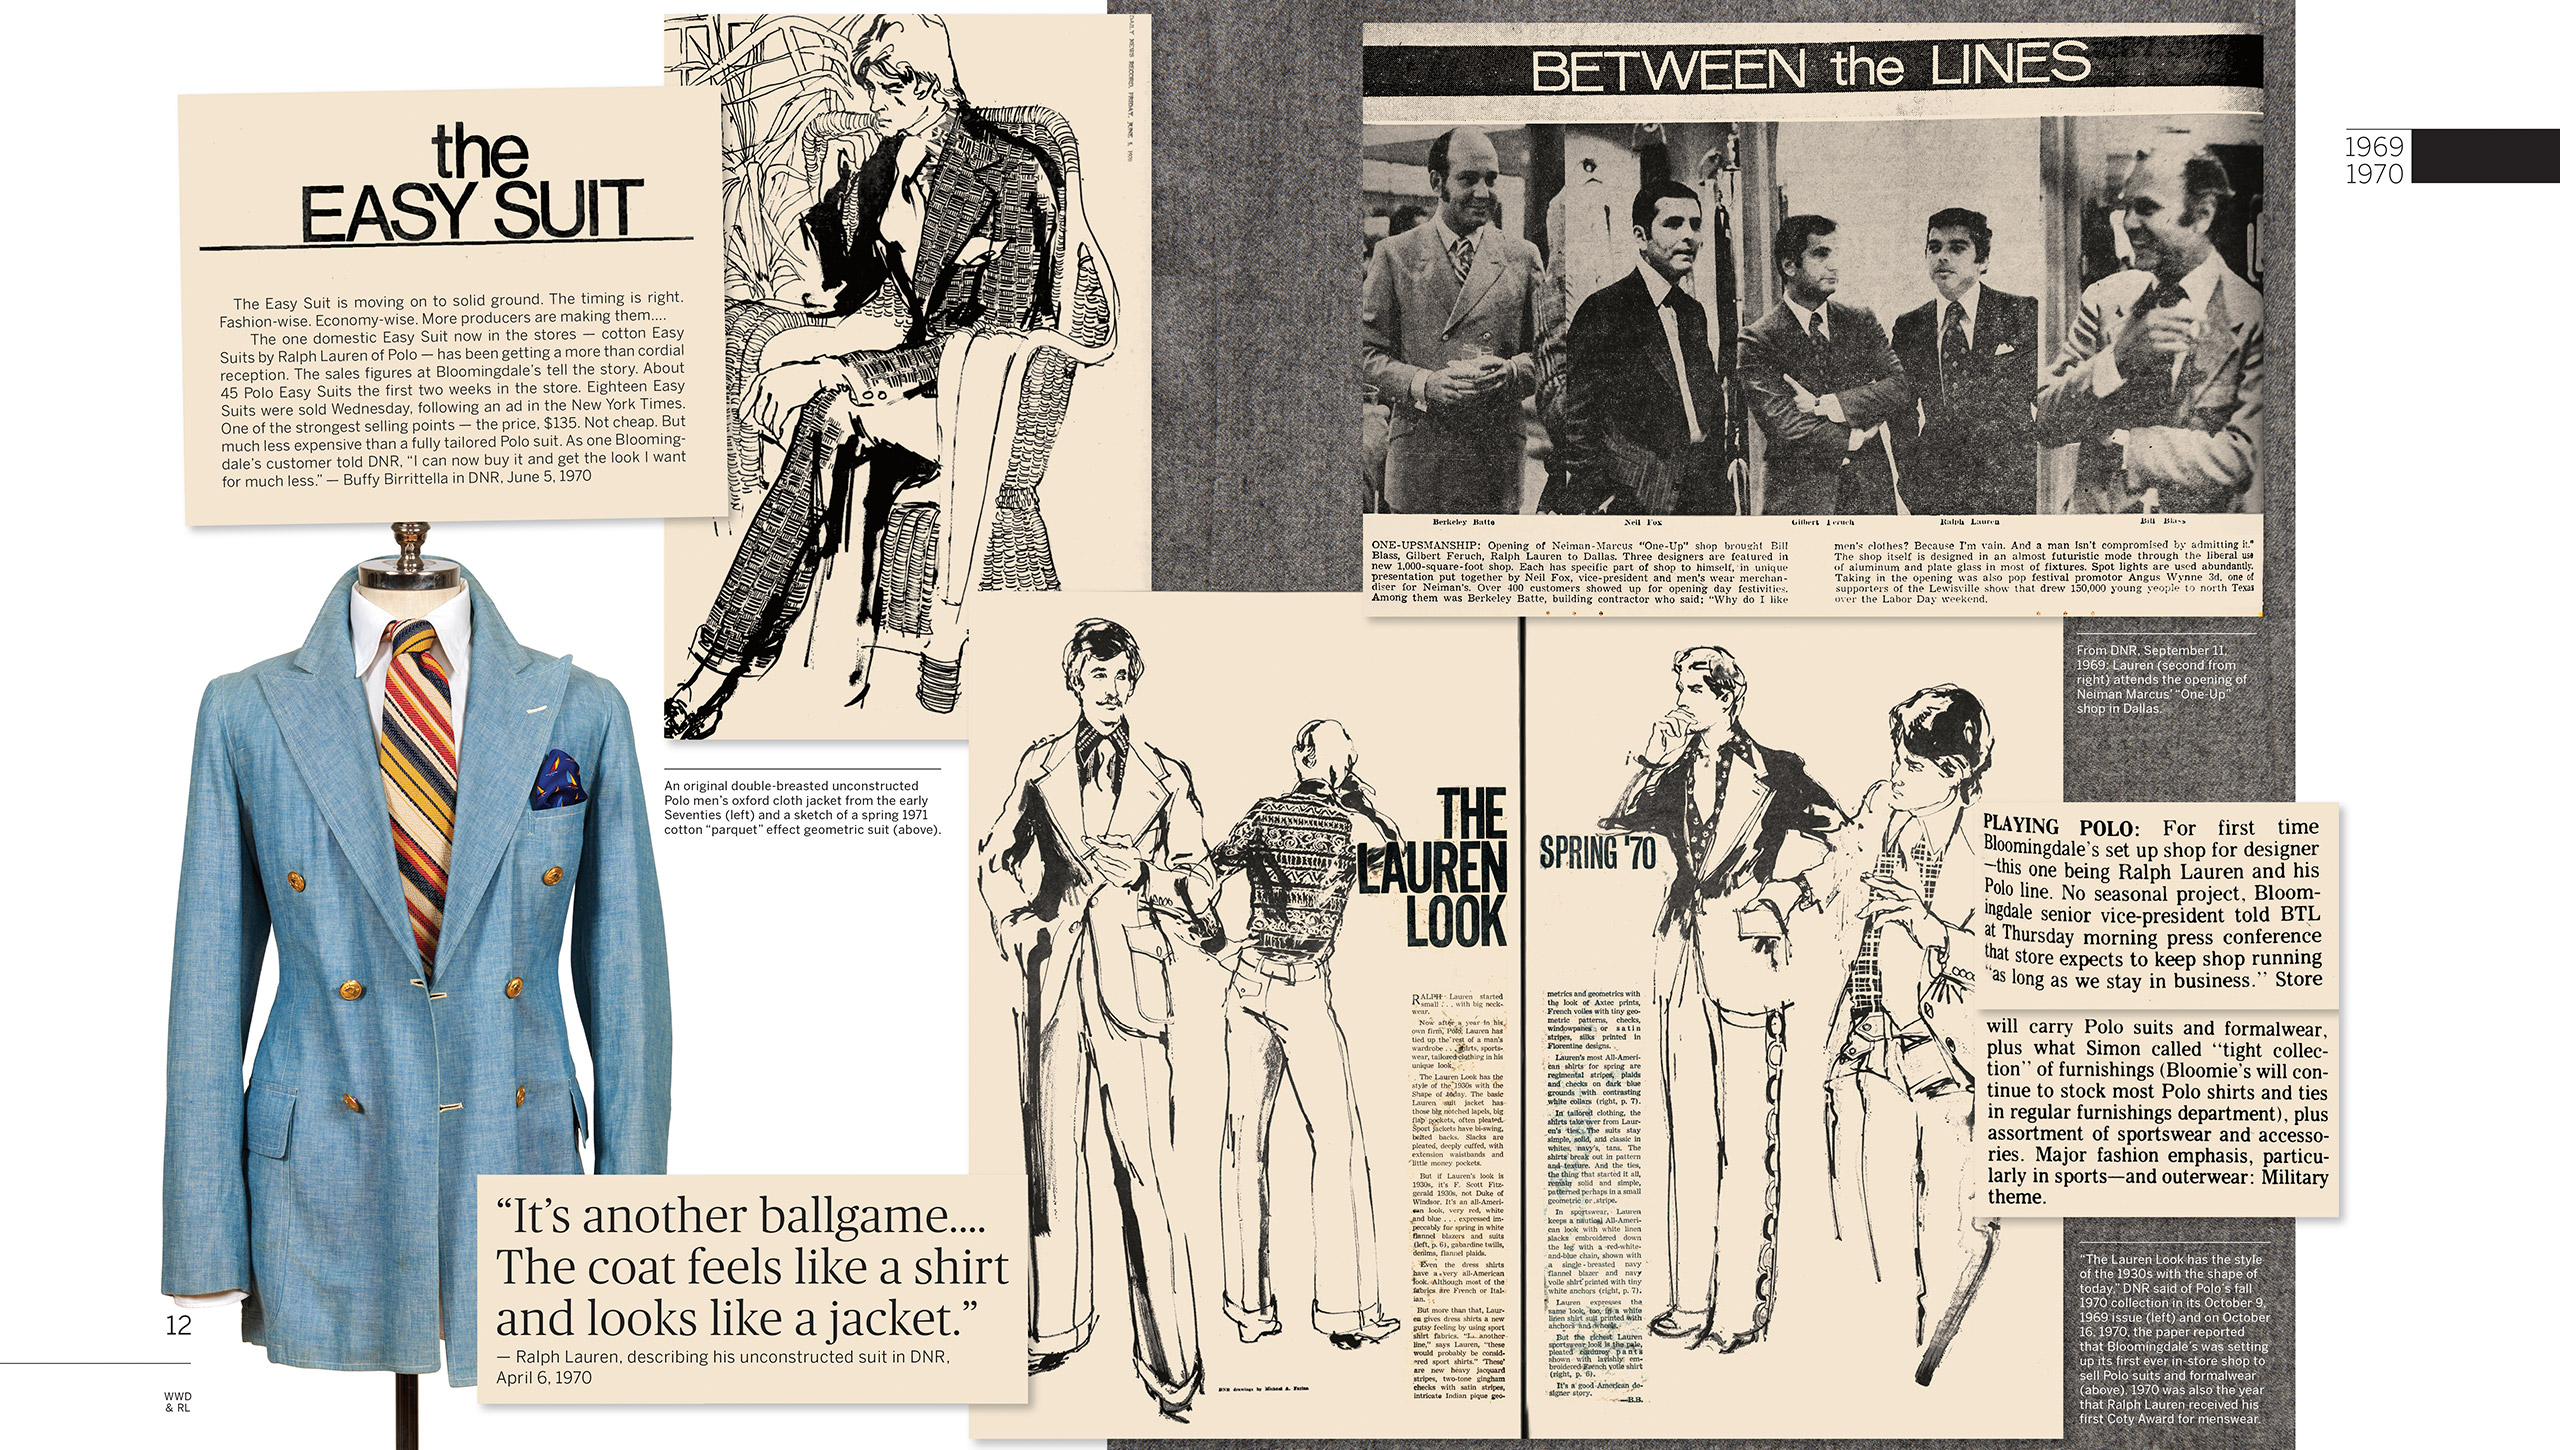 1970: Il &#x201C;look Lauren&#x201D; diventa sinonimo di uomo americano elegante. Ralph Lauren ottiene un grande successo con il suo &#x201C;abito casual&#x201D; in tessuto Oxford, vendendone 45 esemplari nelle prime due settimane dal lancio da Bloomingdale&#x2019;s. Il leggendario rivenditore allestisce un negozio dedicato a Ralph Lauren all&#x2019;interno della propria struttura: si tratta di una novit&#xE0; assoluta per uno stilista. La linea Polo si amplia, includendo abbigliamento sportivo e accessori. In quell&#x2019;anno, Ralph Lauren vince il suo primo Coty Award per l&#x2019;abbigliamento maschile.